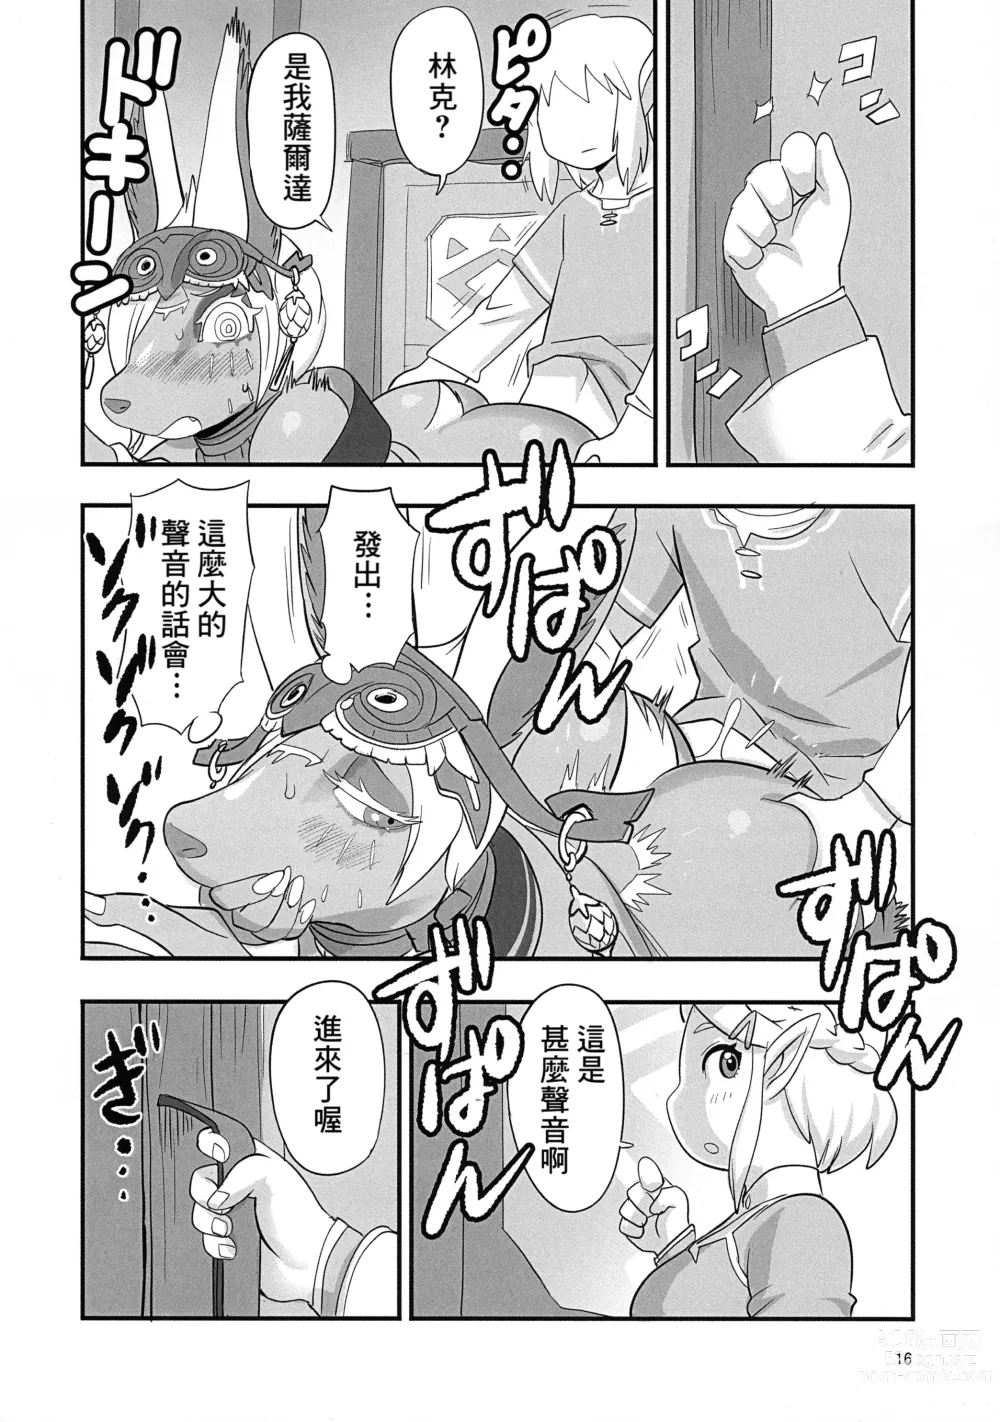 Page 16 of doujinshi Mineru-sama Juniku